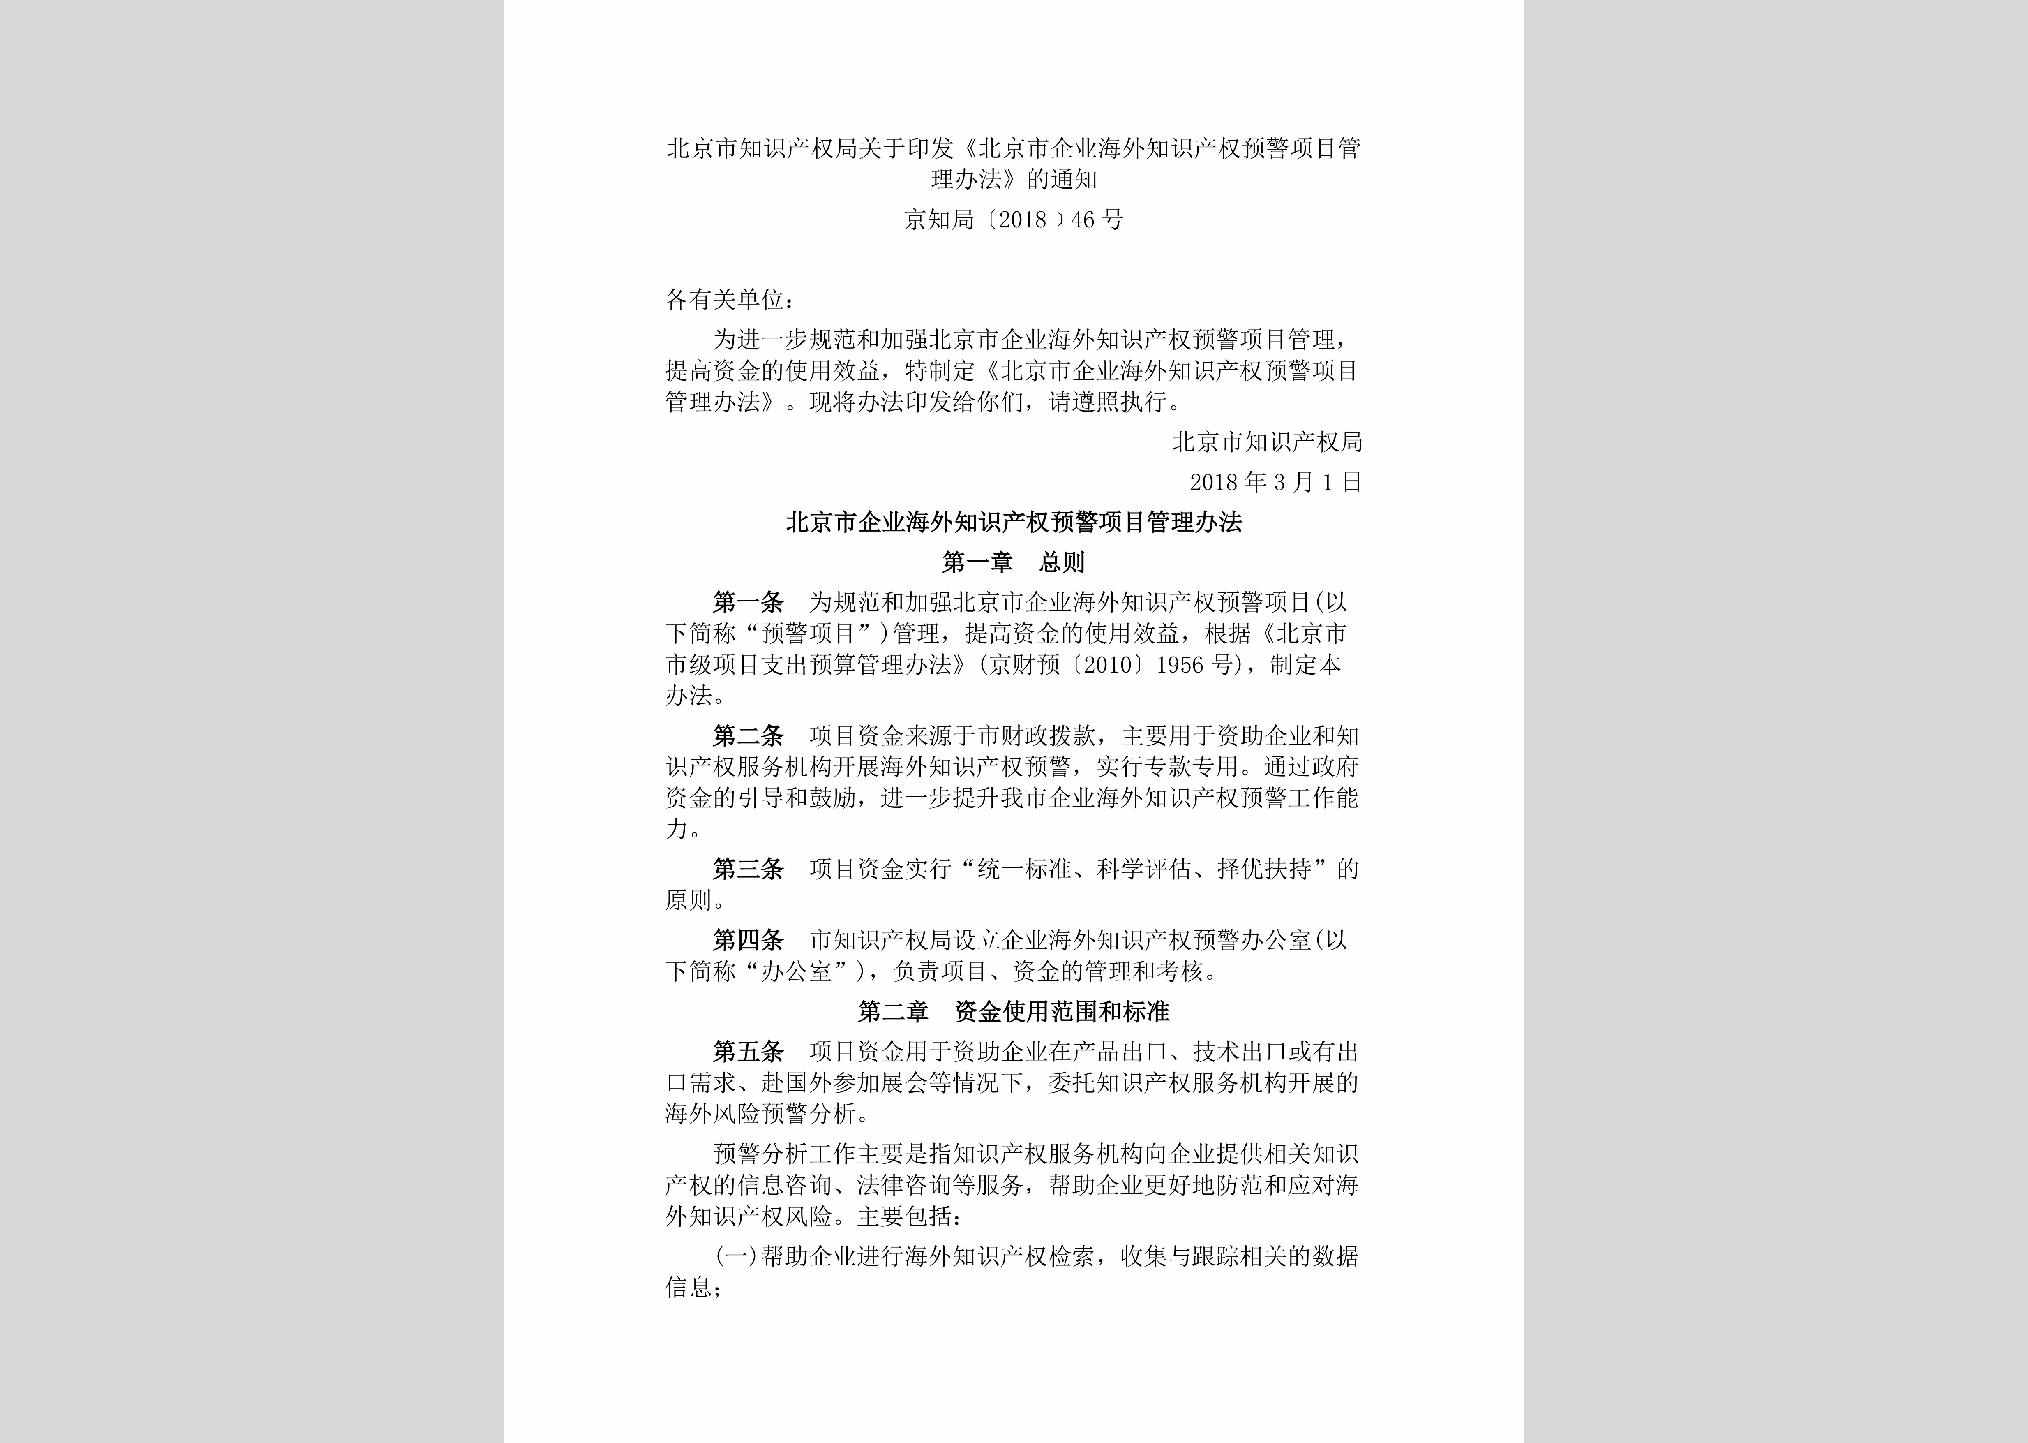 京知局[2018]46号：北京市知识产权局关于印发《北京市企业海外知识产权预警项目管理办法》的通知